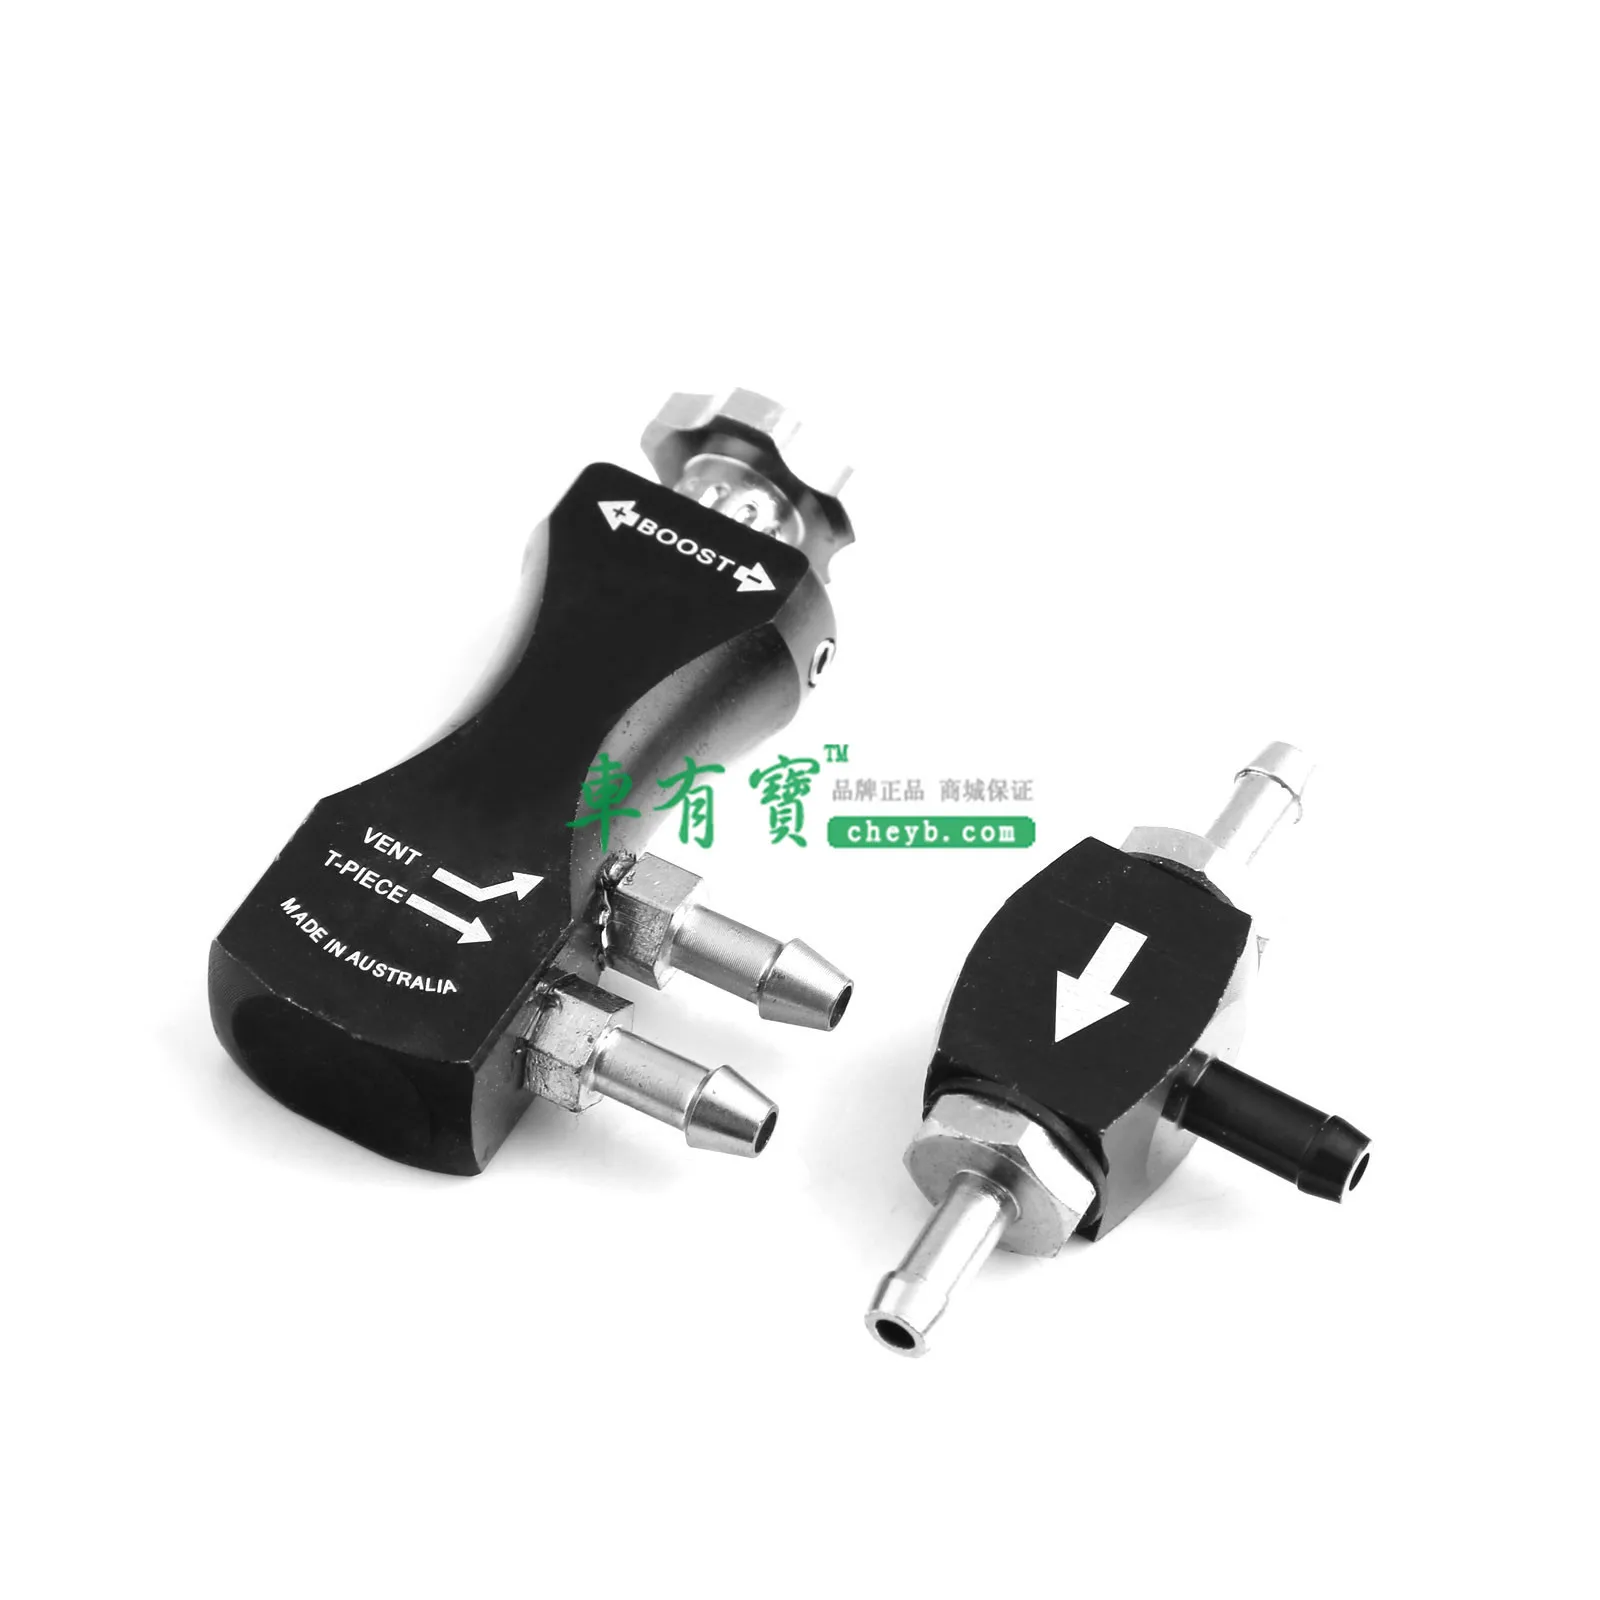 Автомобильный односторонний турбинный клапан регулирования давления/Автомобильный модифицированный турбо-зарядный регулятор давления/ручное регулируемое турбинное давление